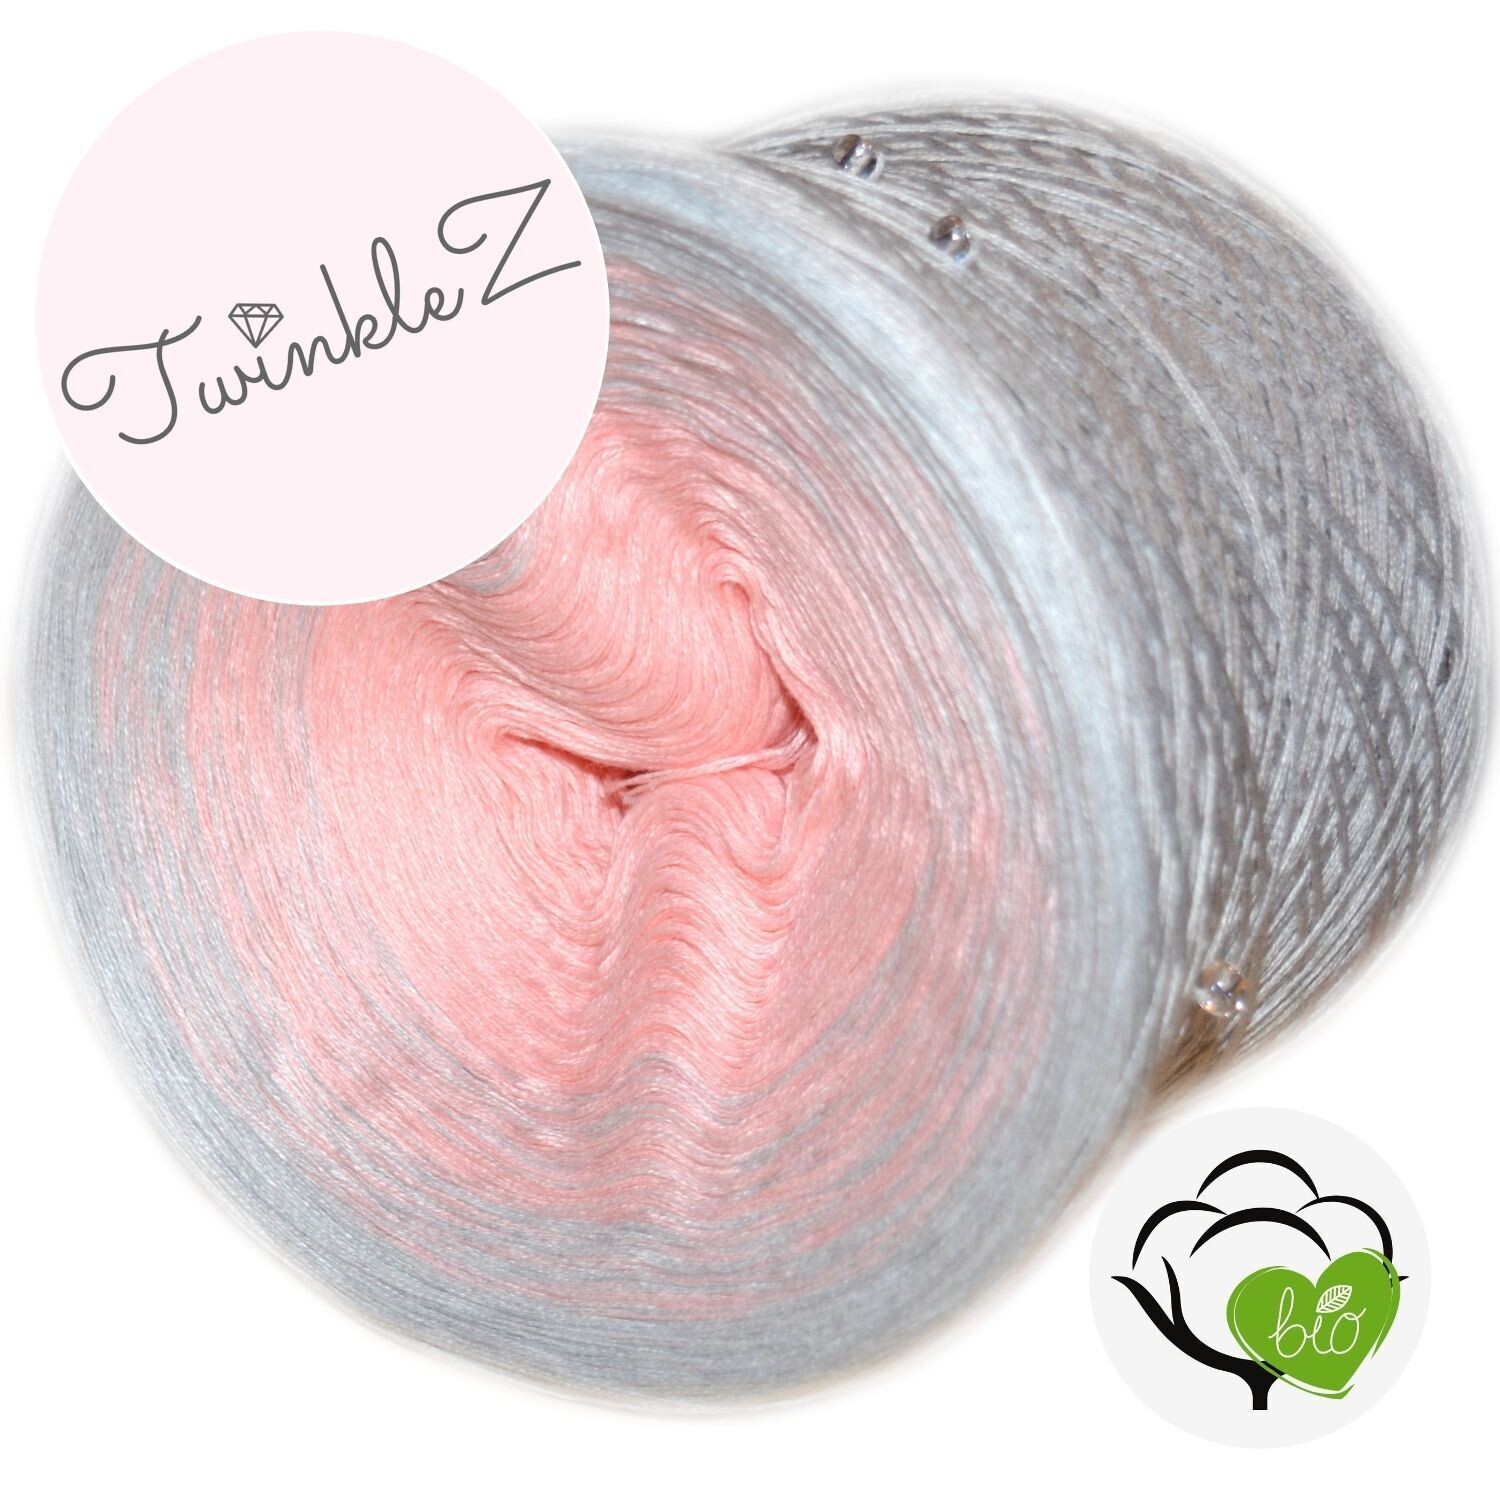 Woolpedia TwinkleZ Bio Wunschverlauf mit Perlen (100% Baumwolle)